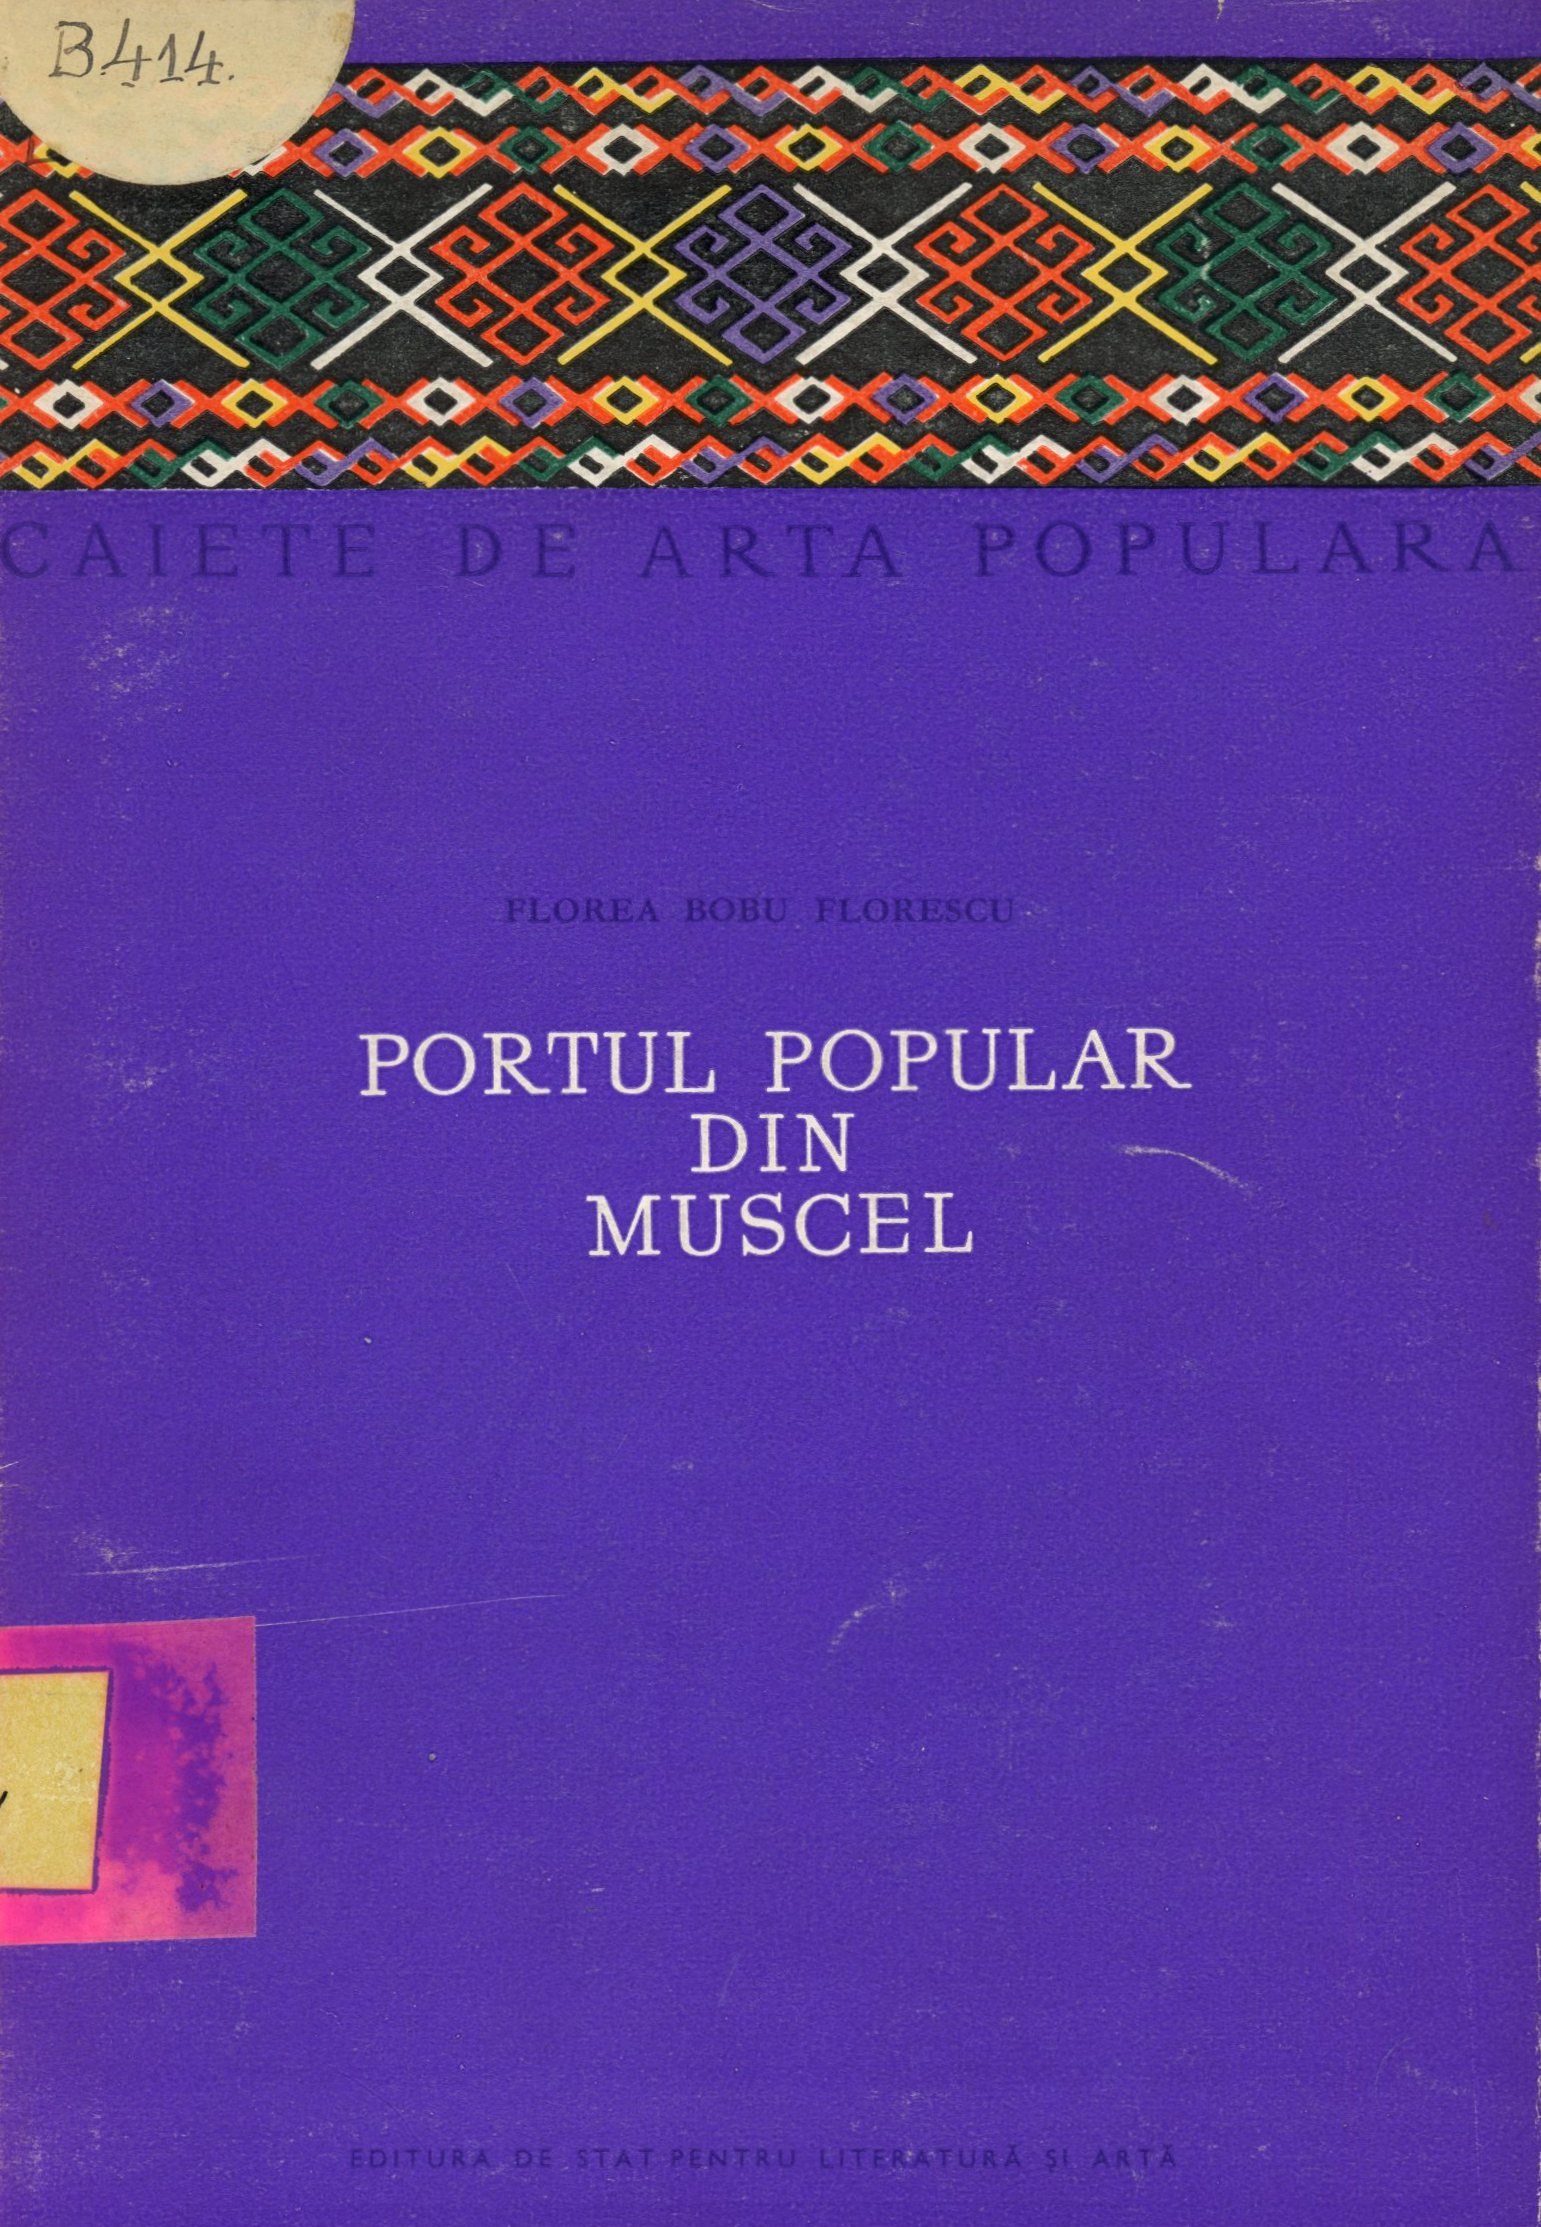 Portul Popular din Muscel (Erkel Ferenc Múzeum és Könyvtár, Gyula CC BY-NC-SA)